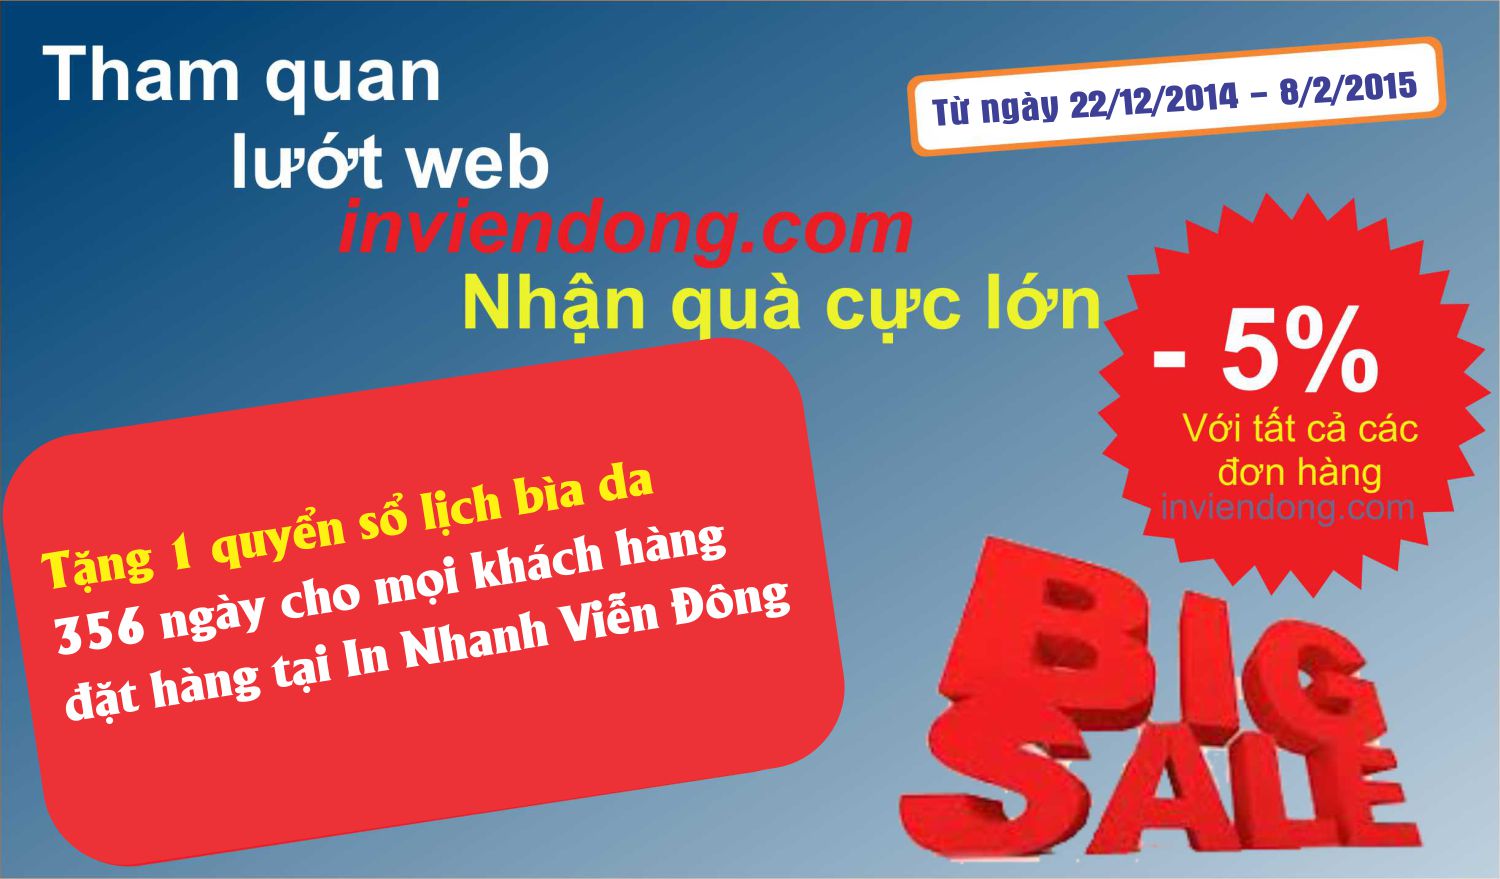 Khuyến mại lớn từ ngày 22/12/2015 tới hết 8/2/2016 (tặng 1 quyển sổ lịch 365 ngày) | Sản xuất tem gắn trên đồ da giá rẻ, lấy ngay | In Vien dong